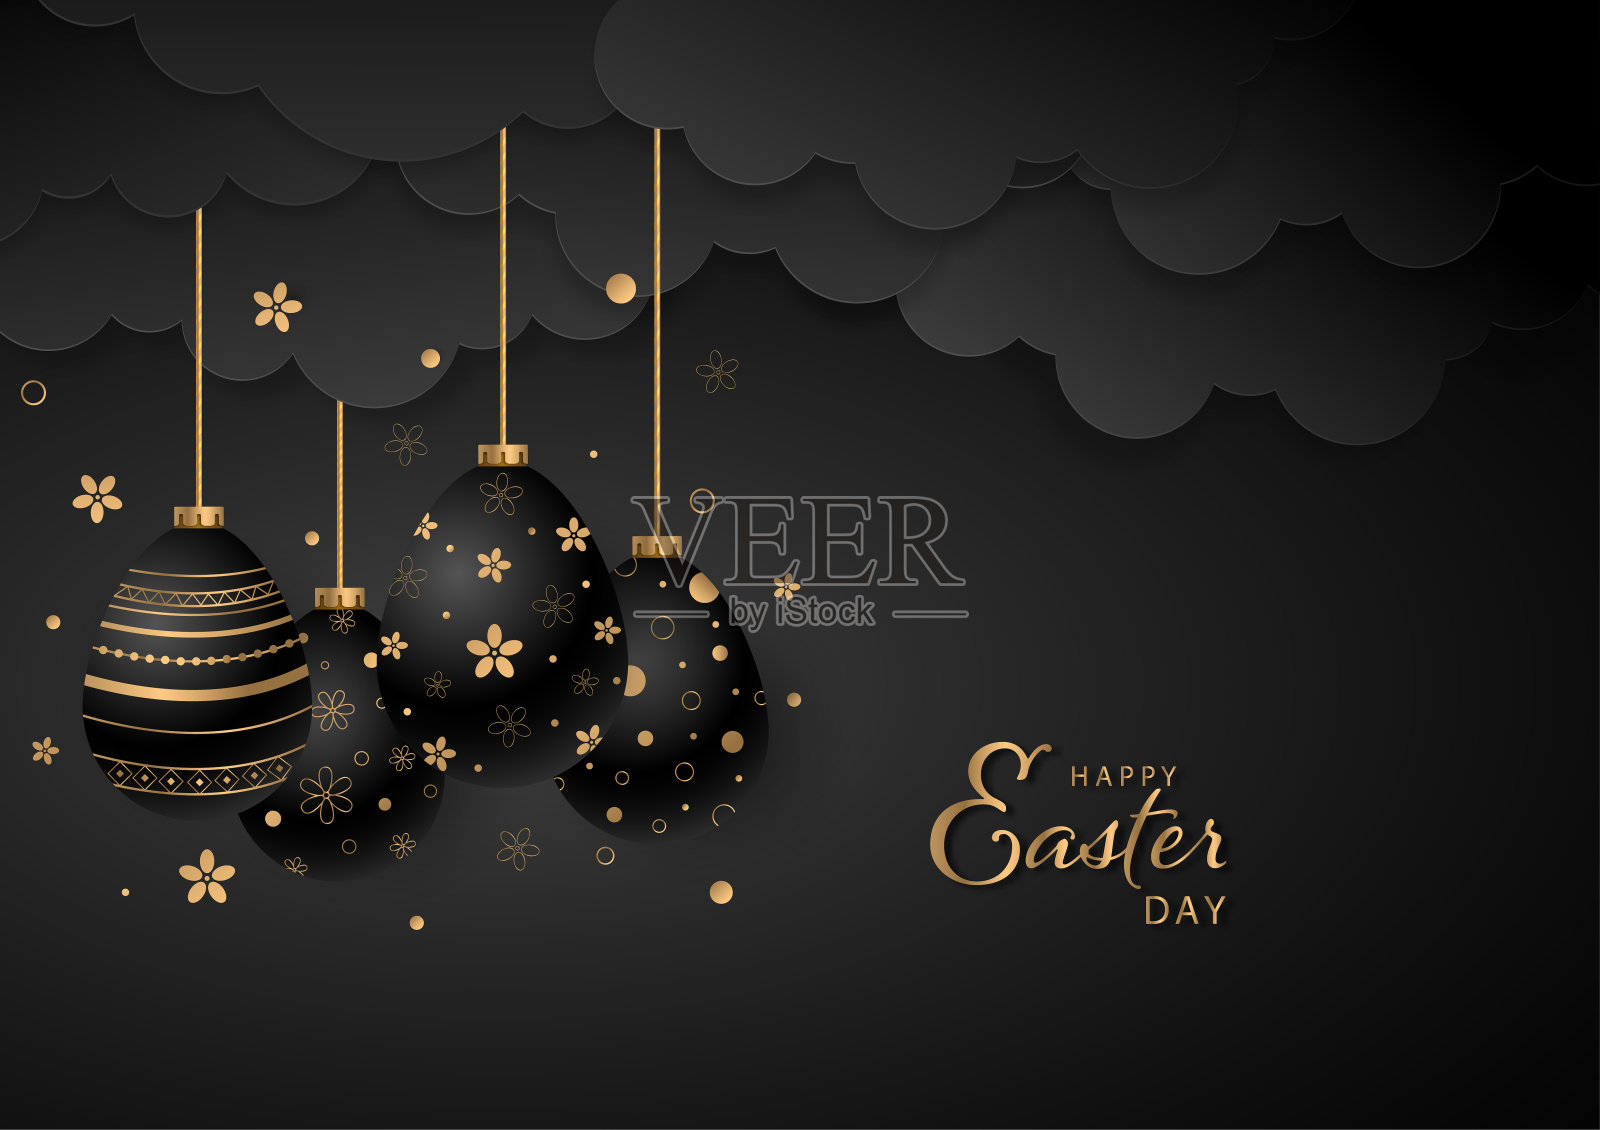 复活节快乐向量黑色背景与手绘鸡蛋下挂云。节日贺卡，宣传册，横幅。设计模板素材